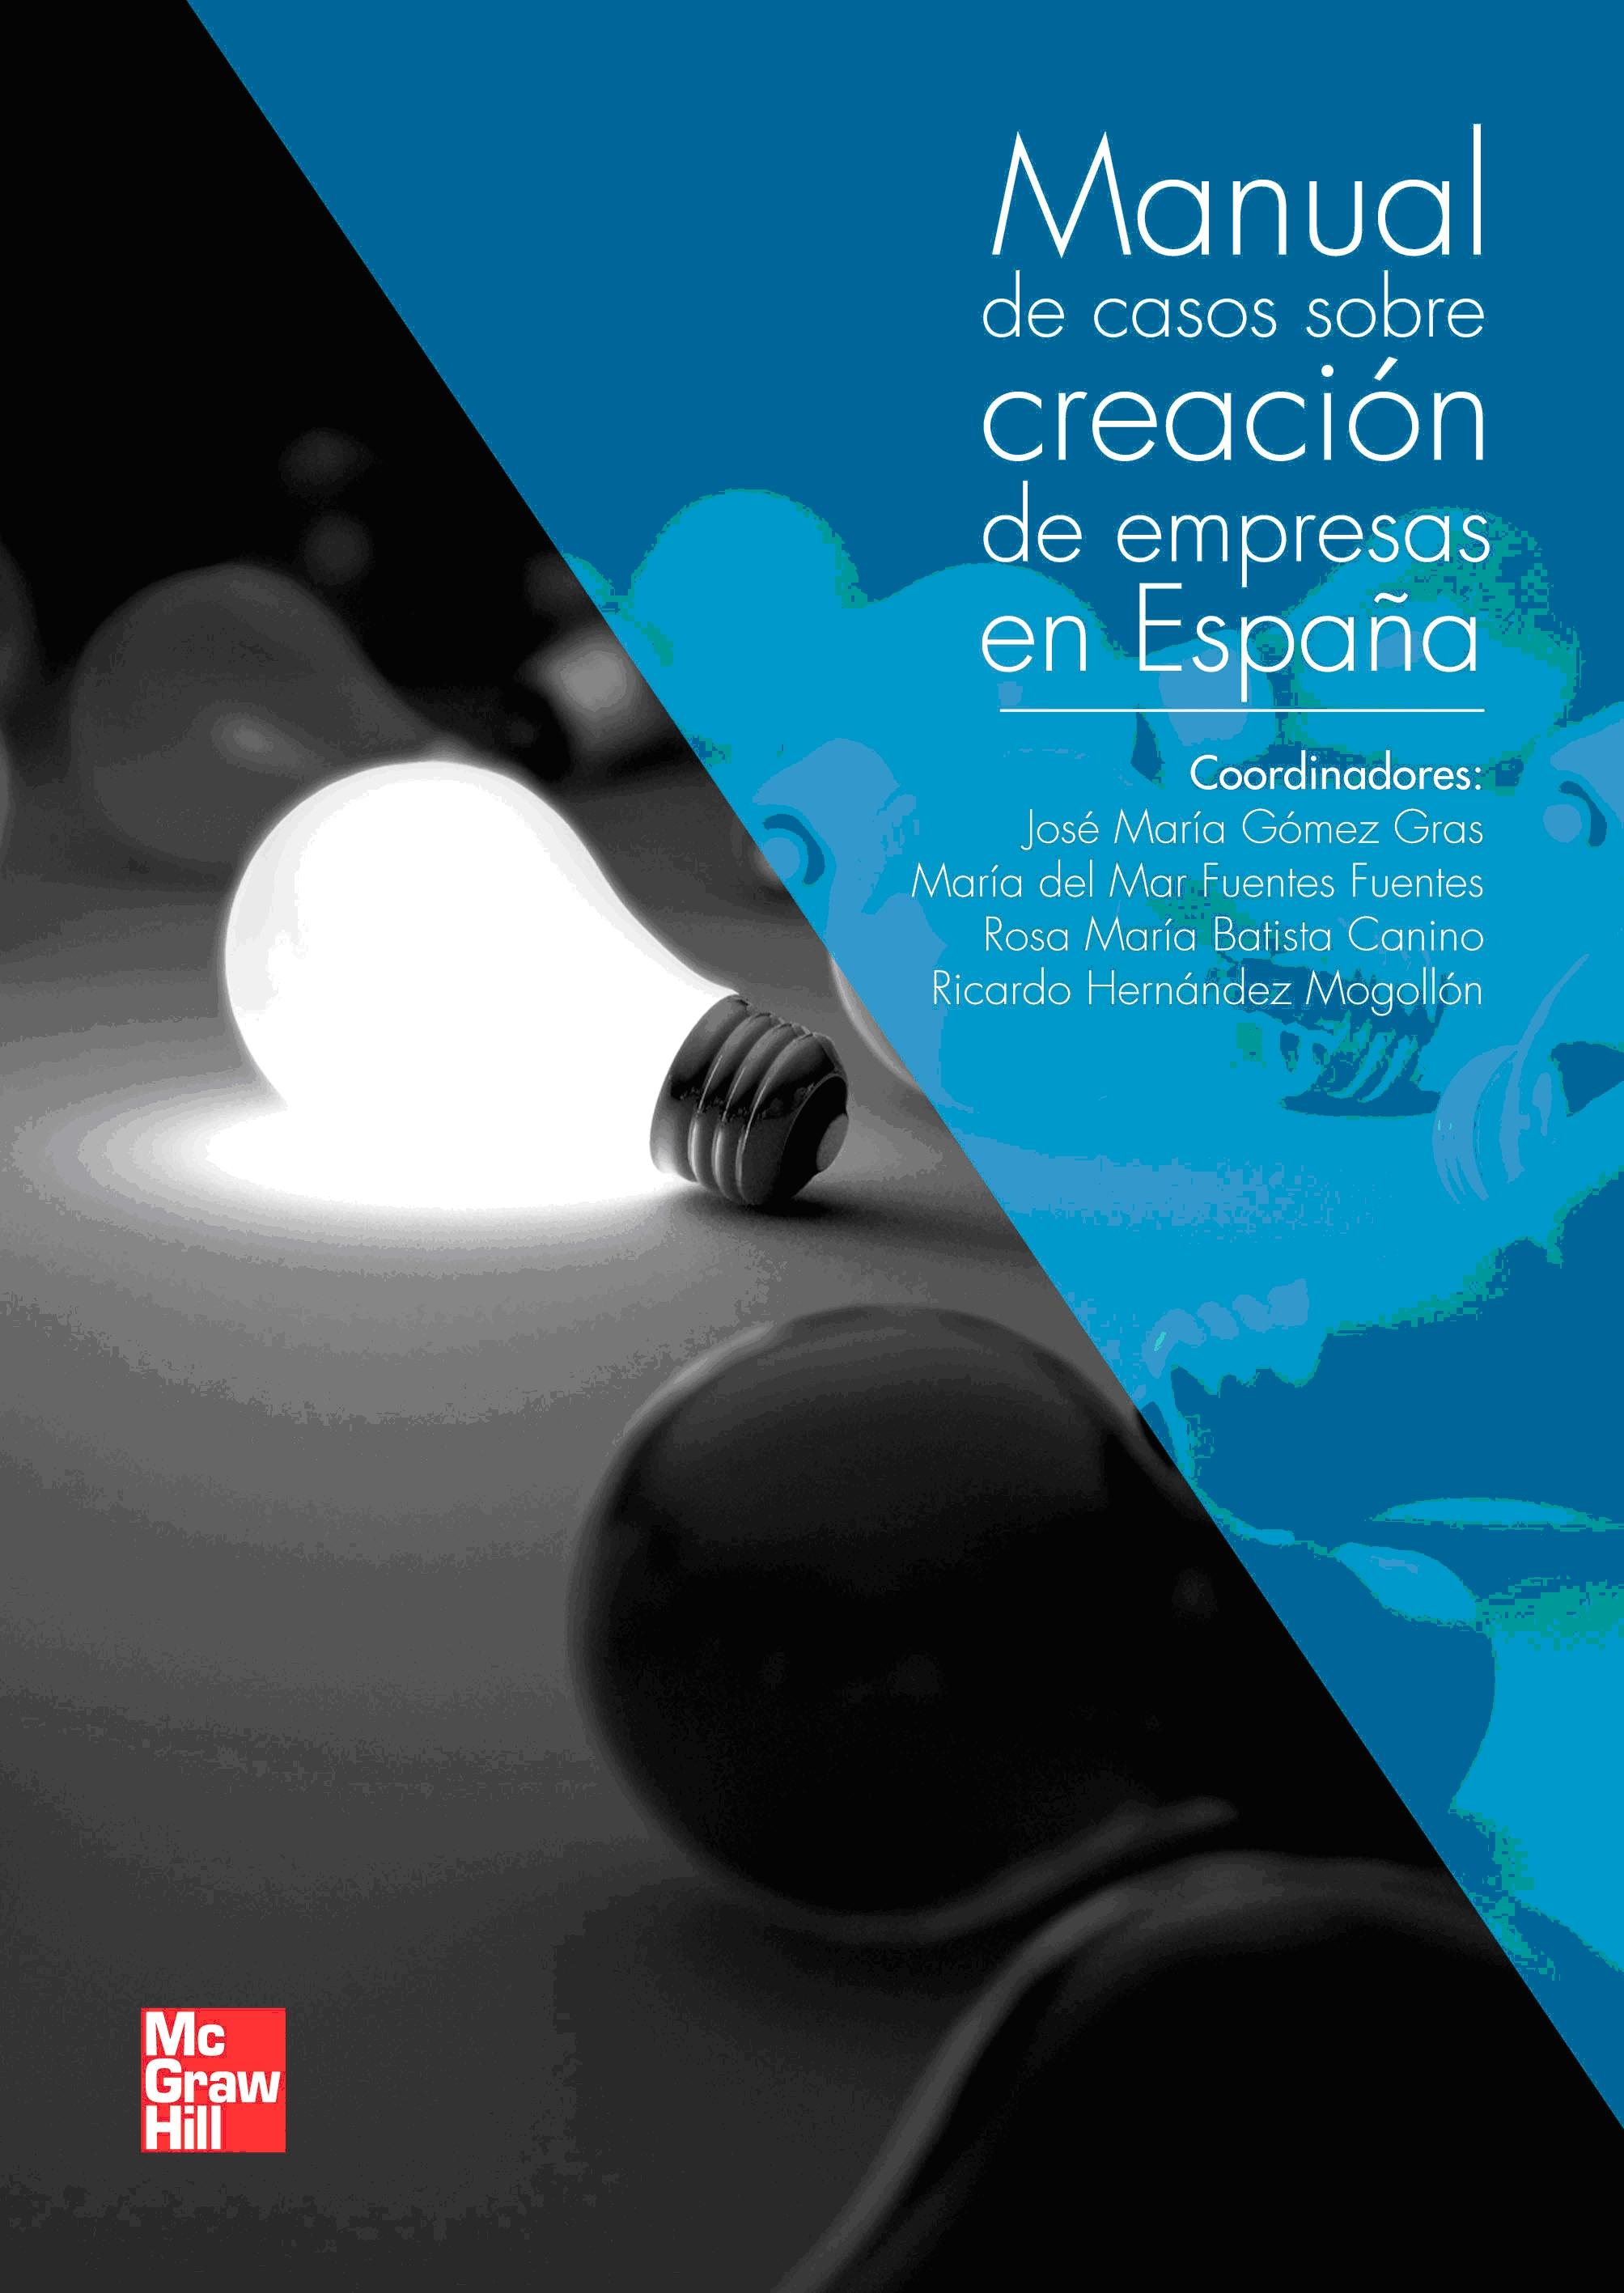 Manual de casos sobre creacion de empresas en España